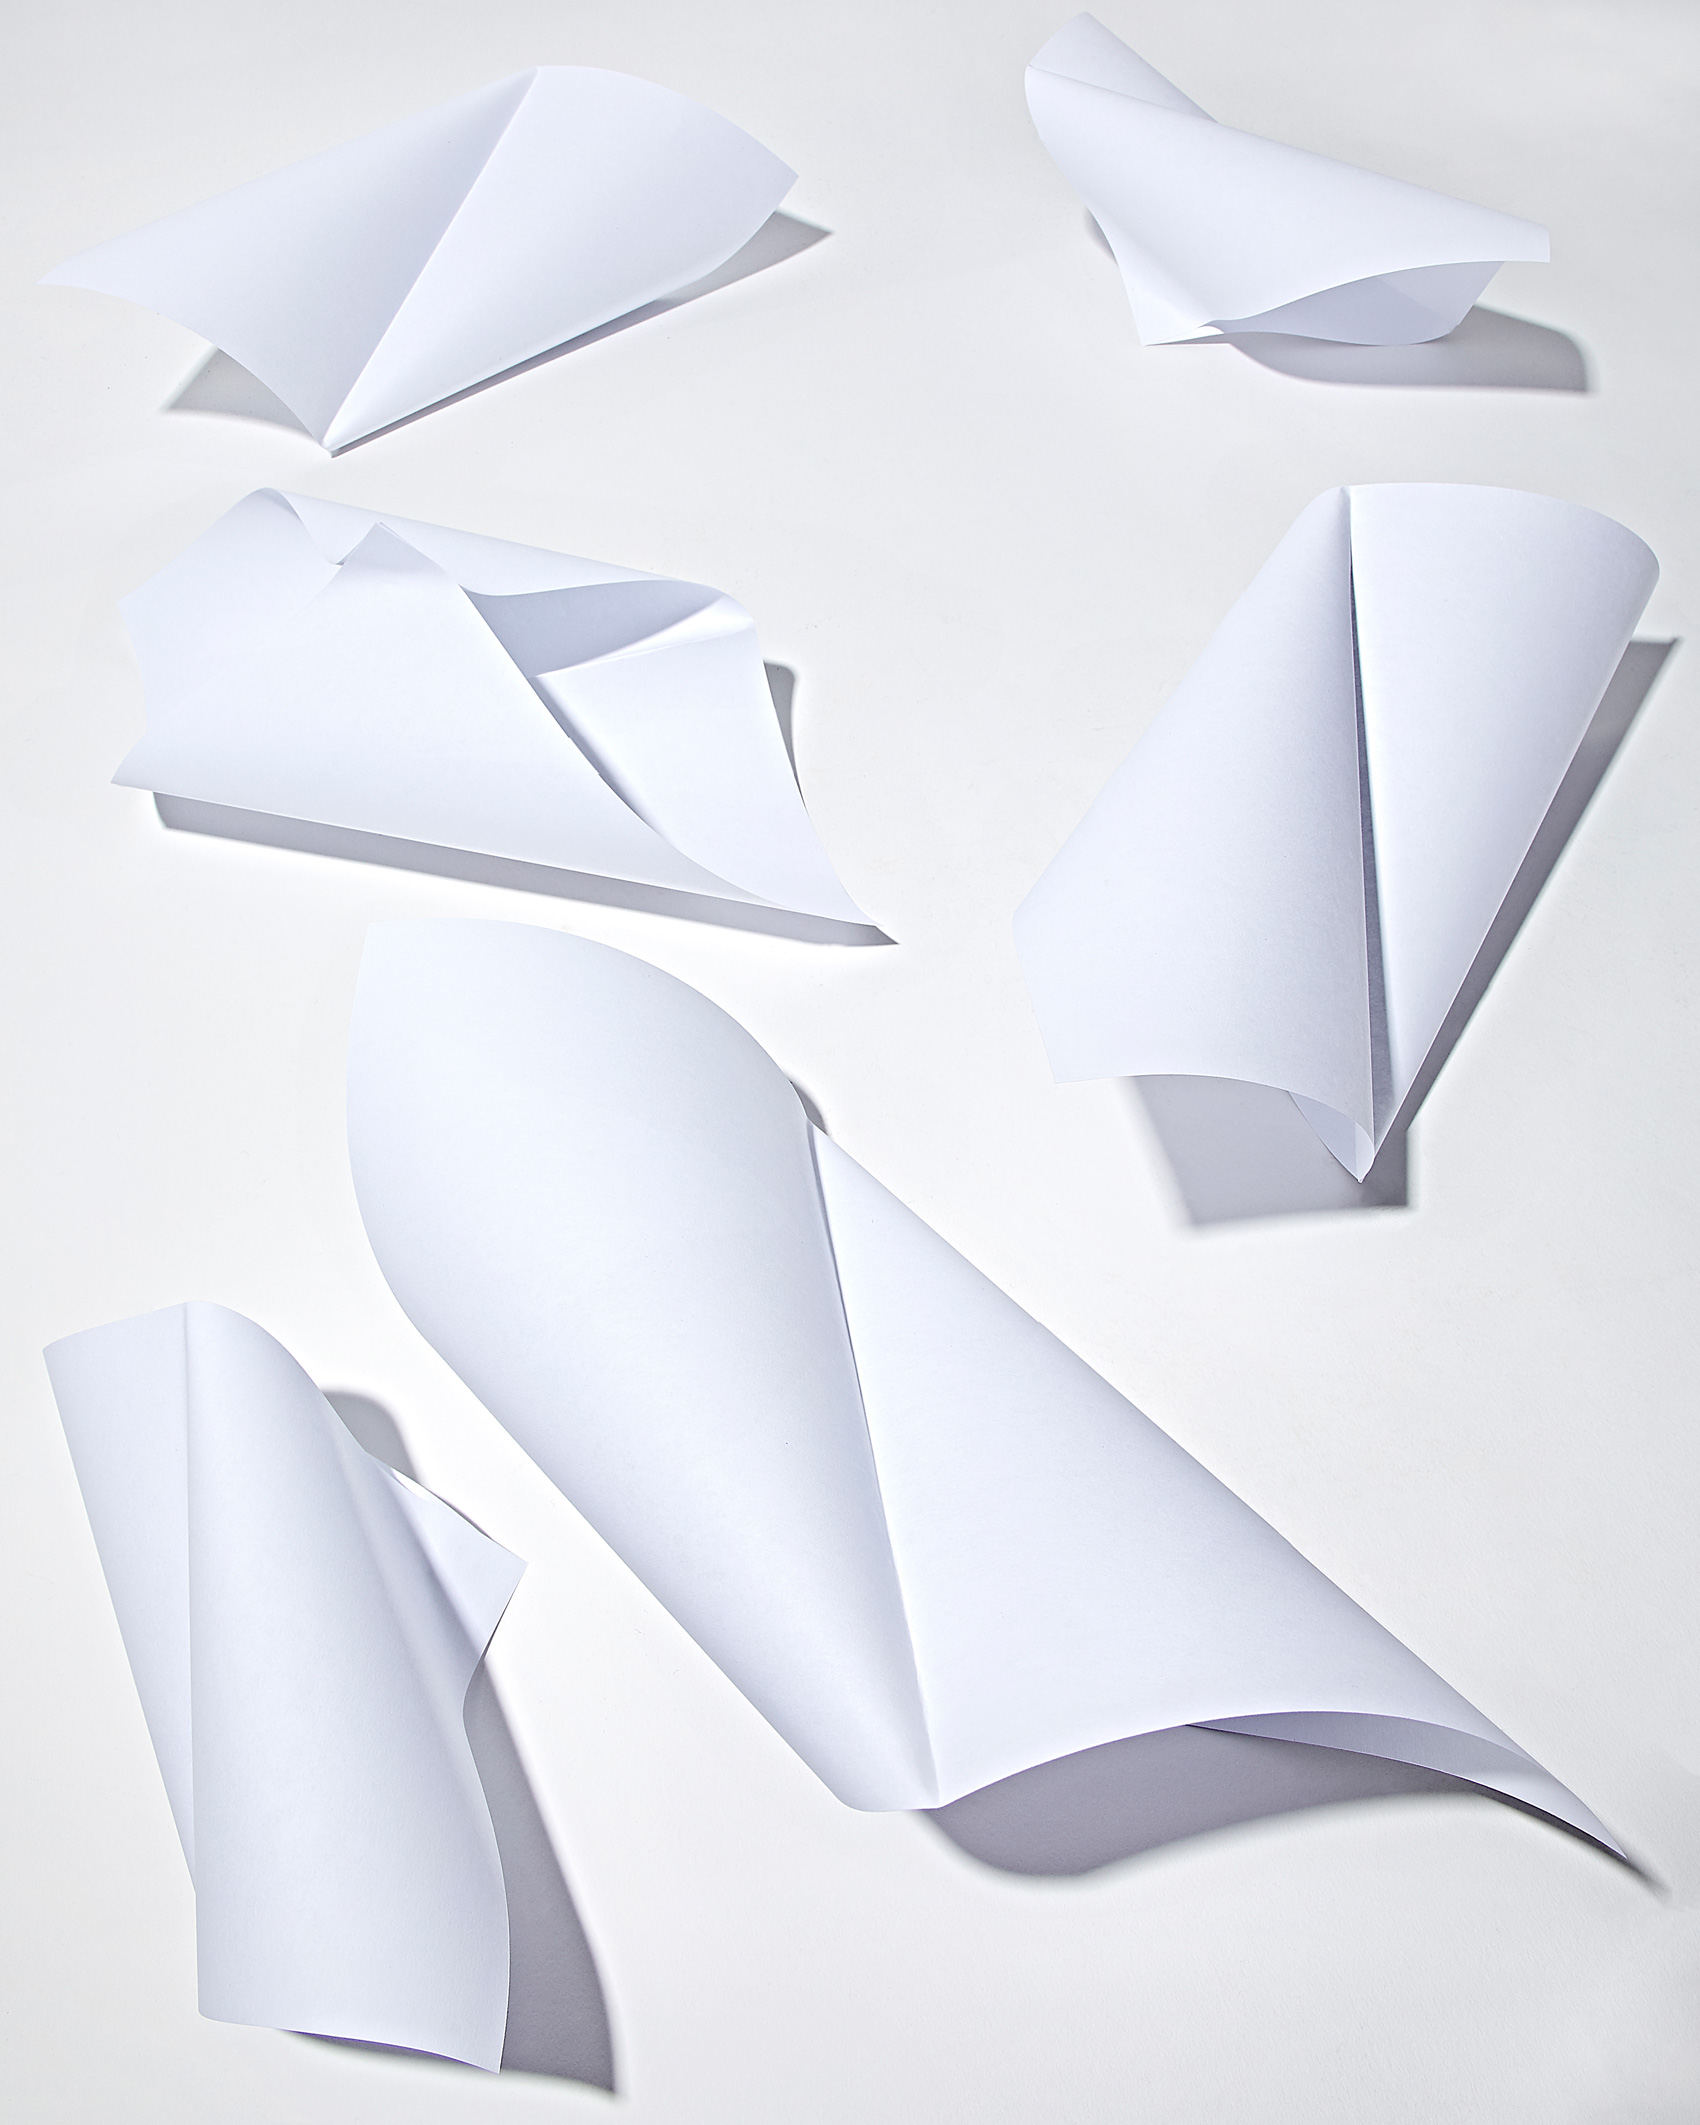 Still Life of Paper